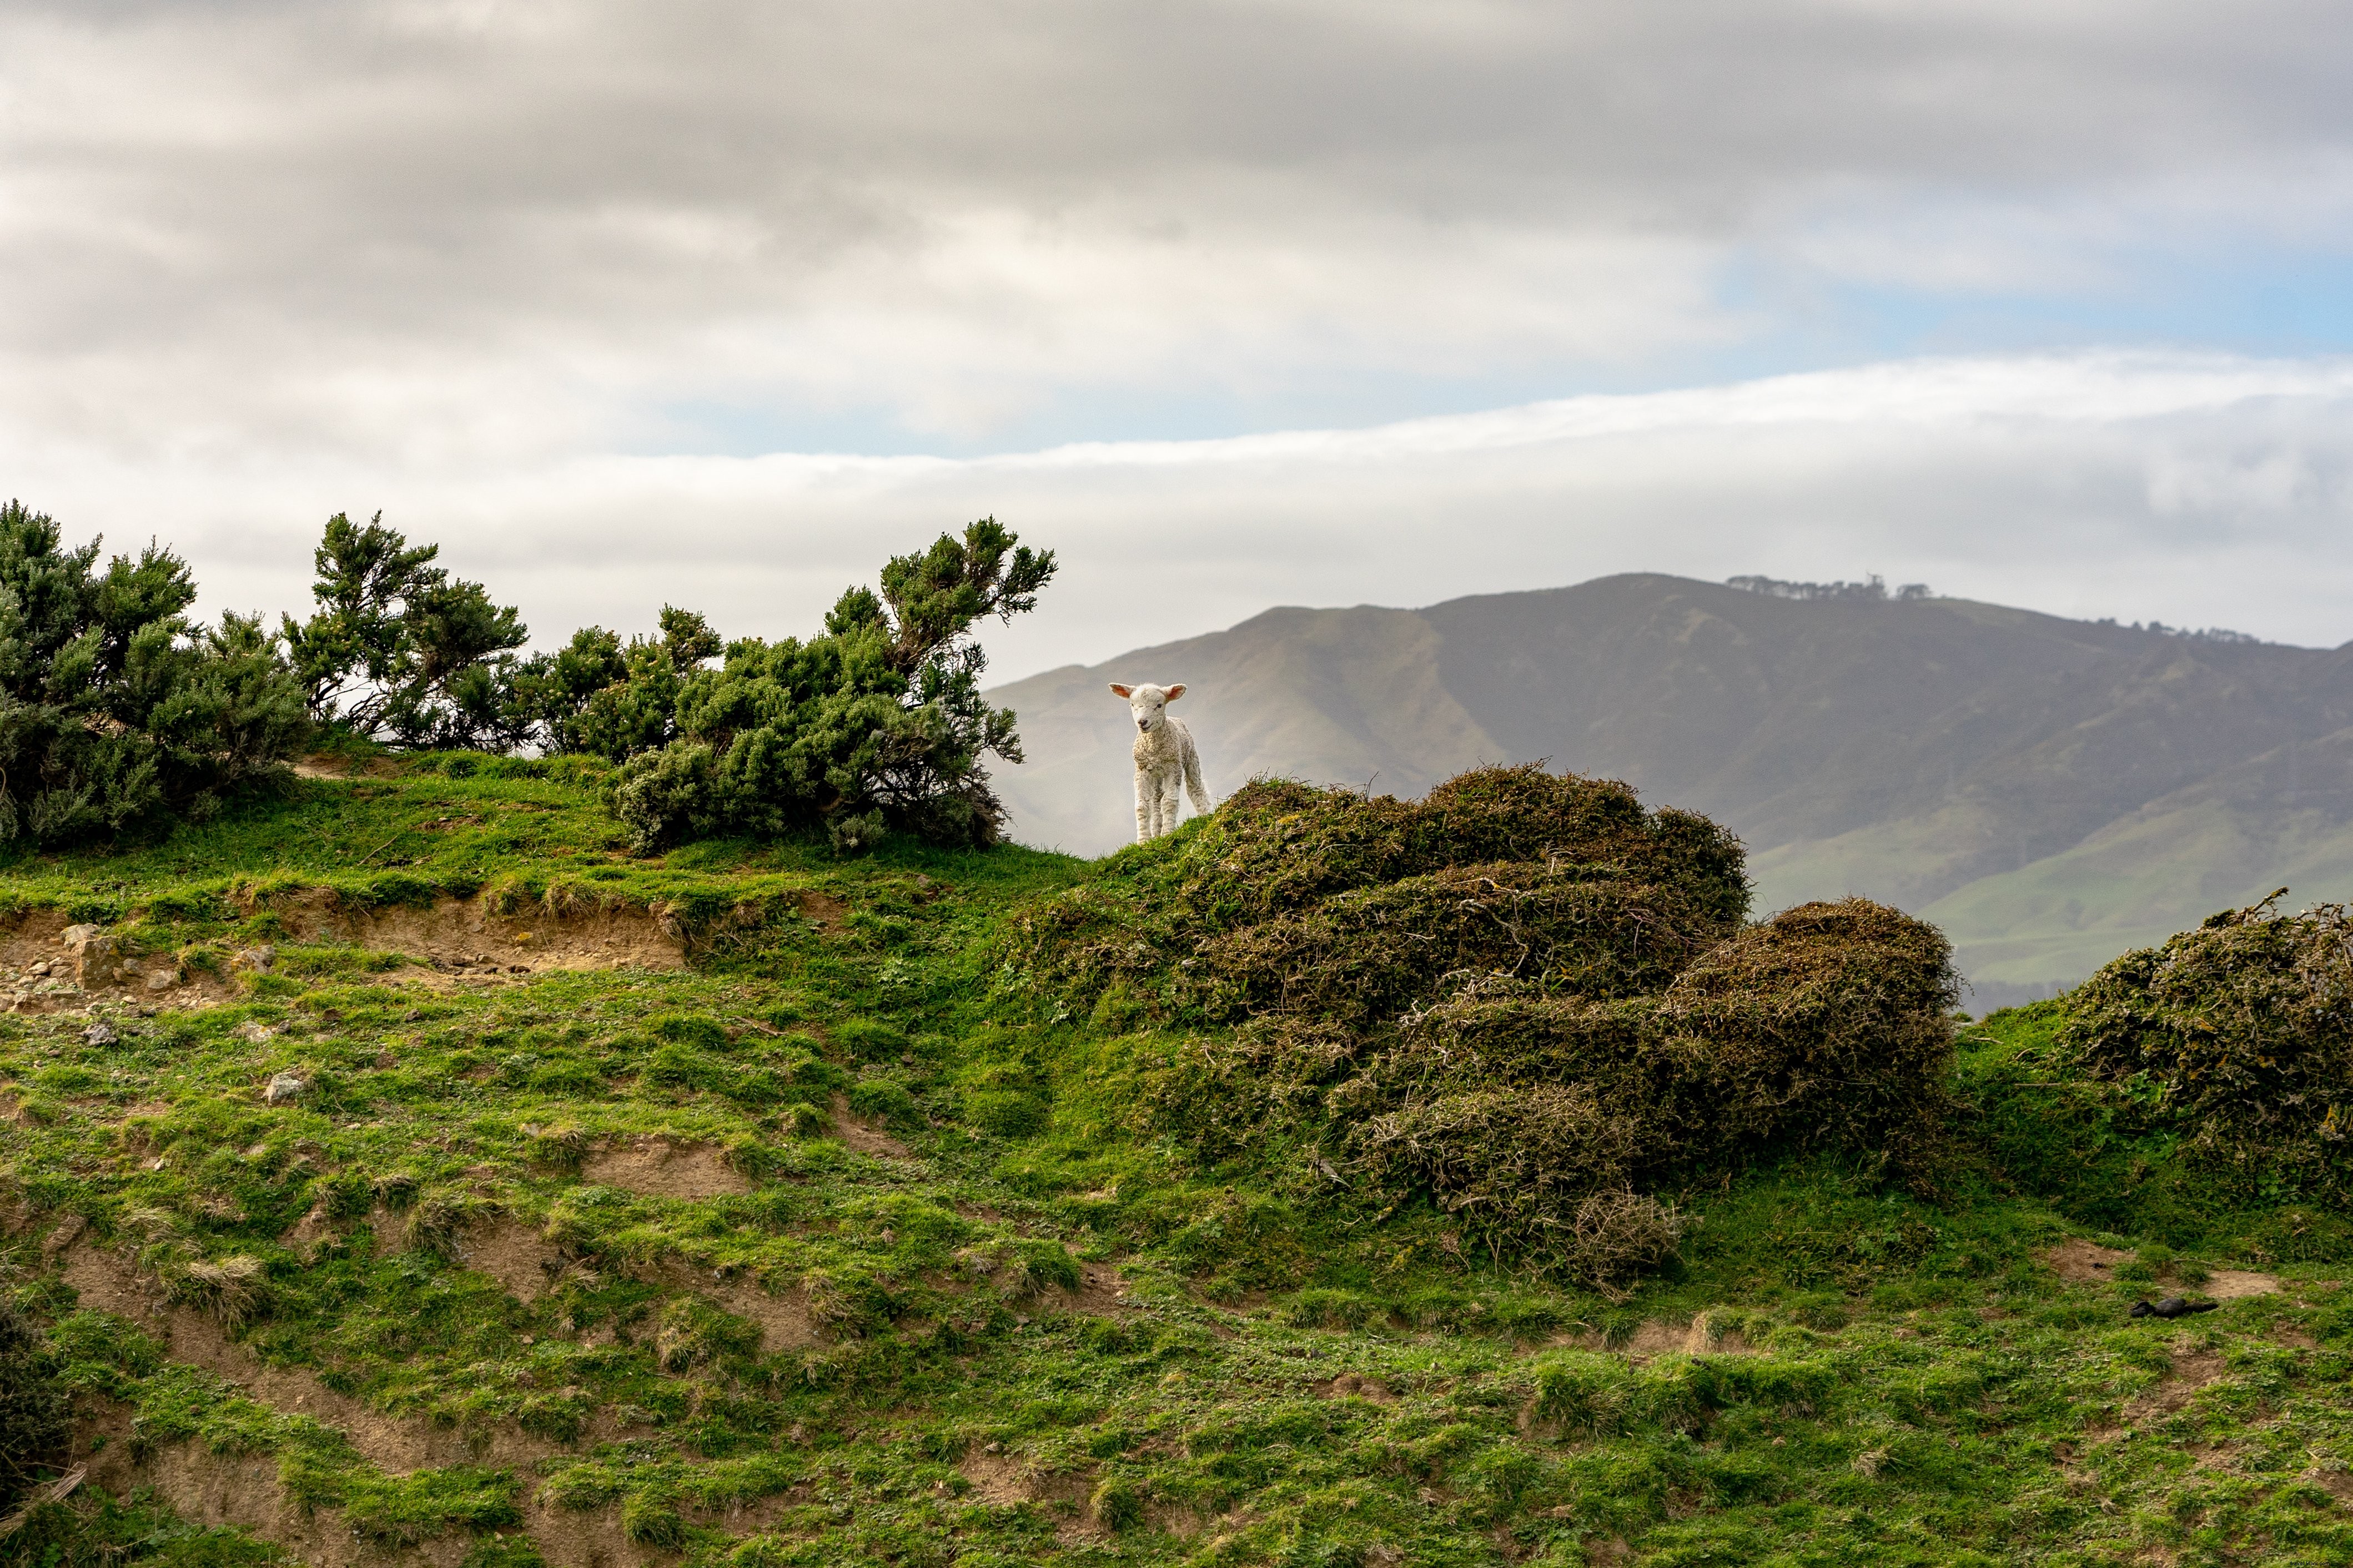 Un agnello al centro della scena in cima alla montagna Photo